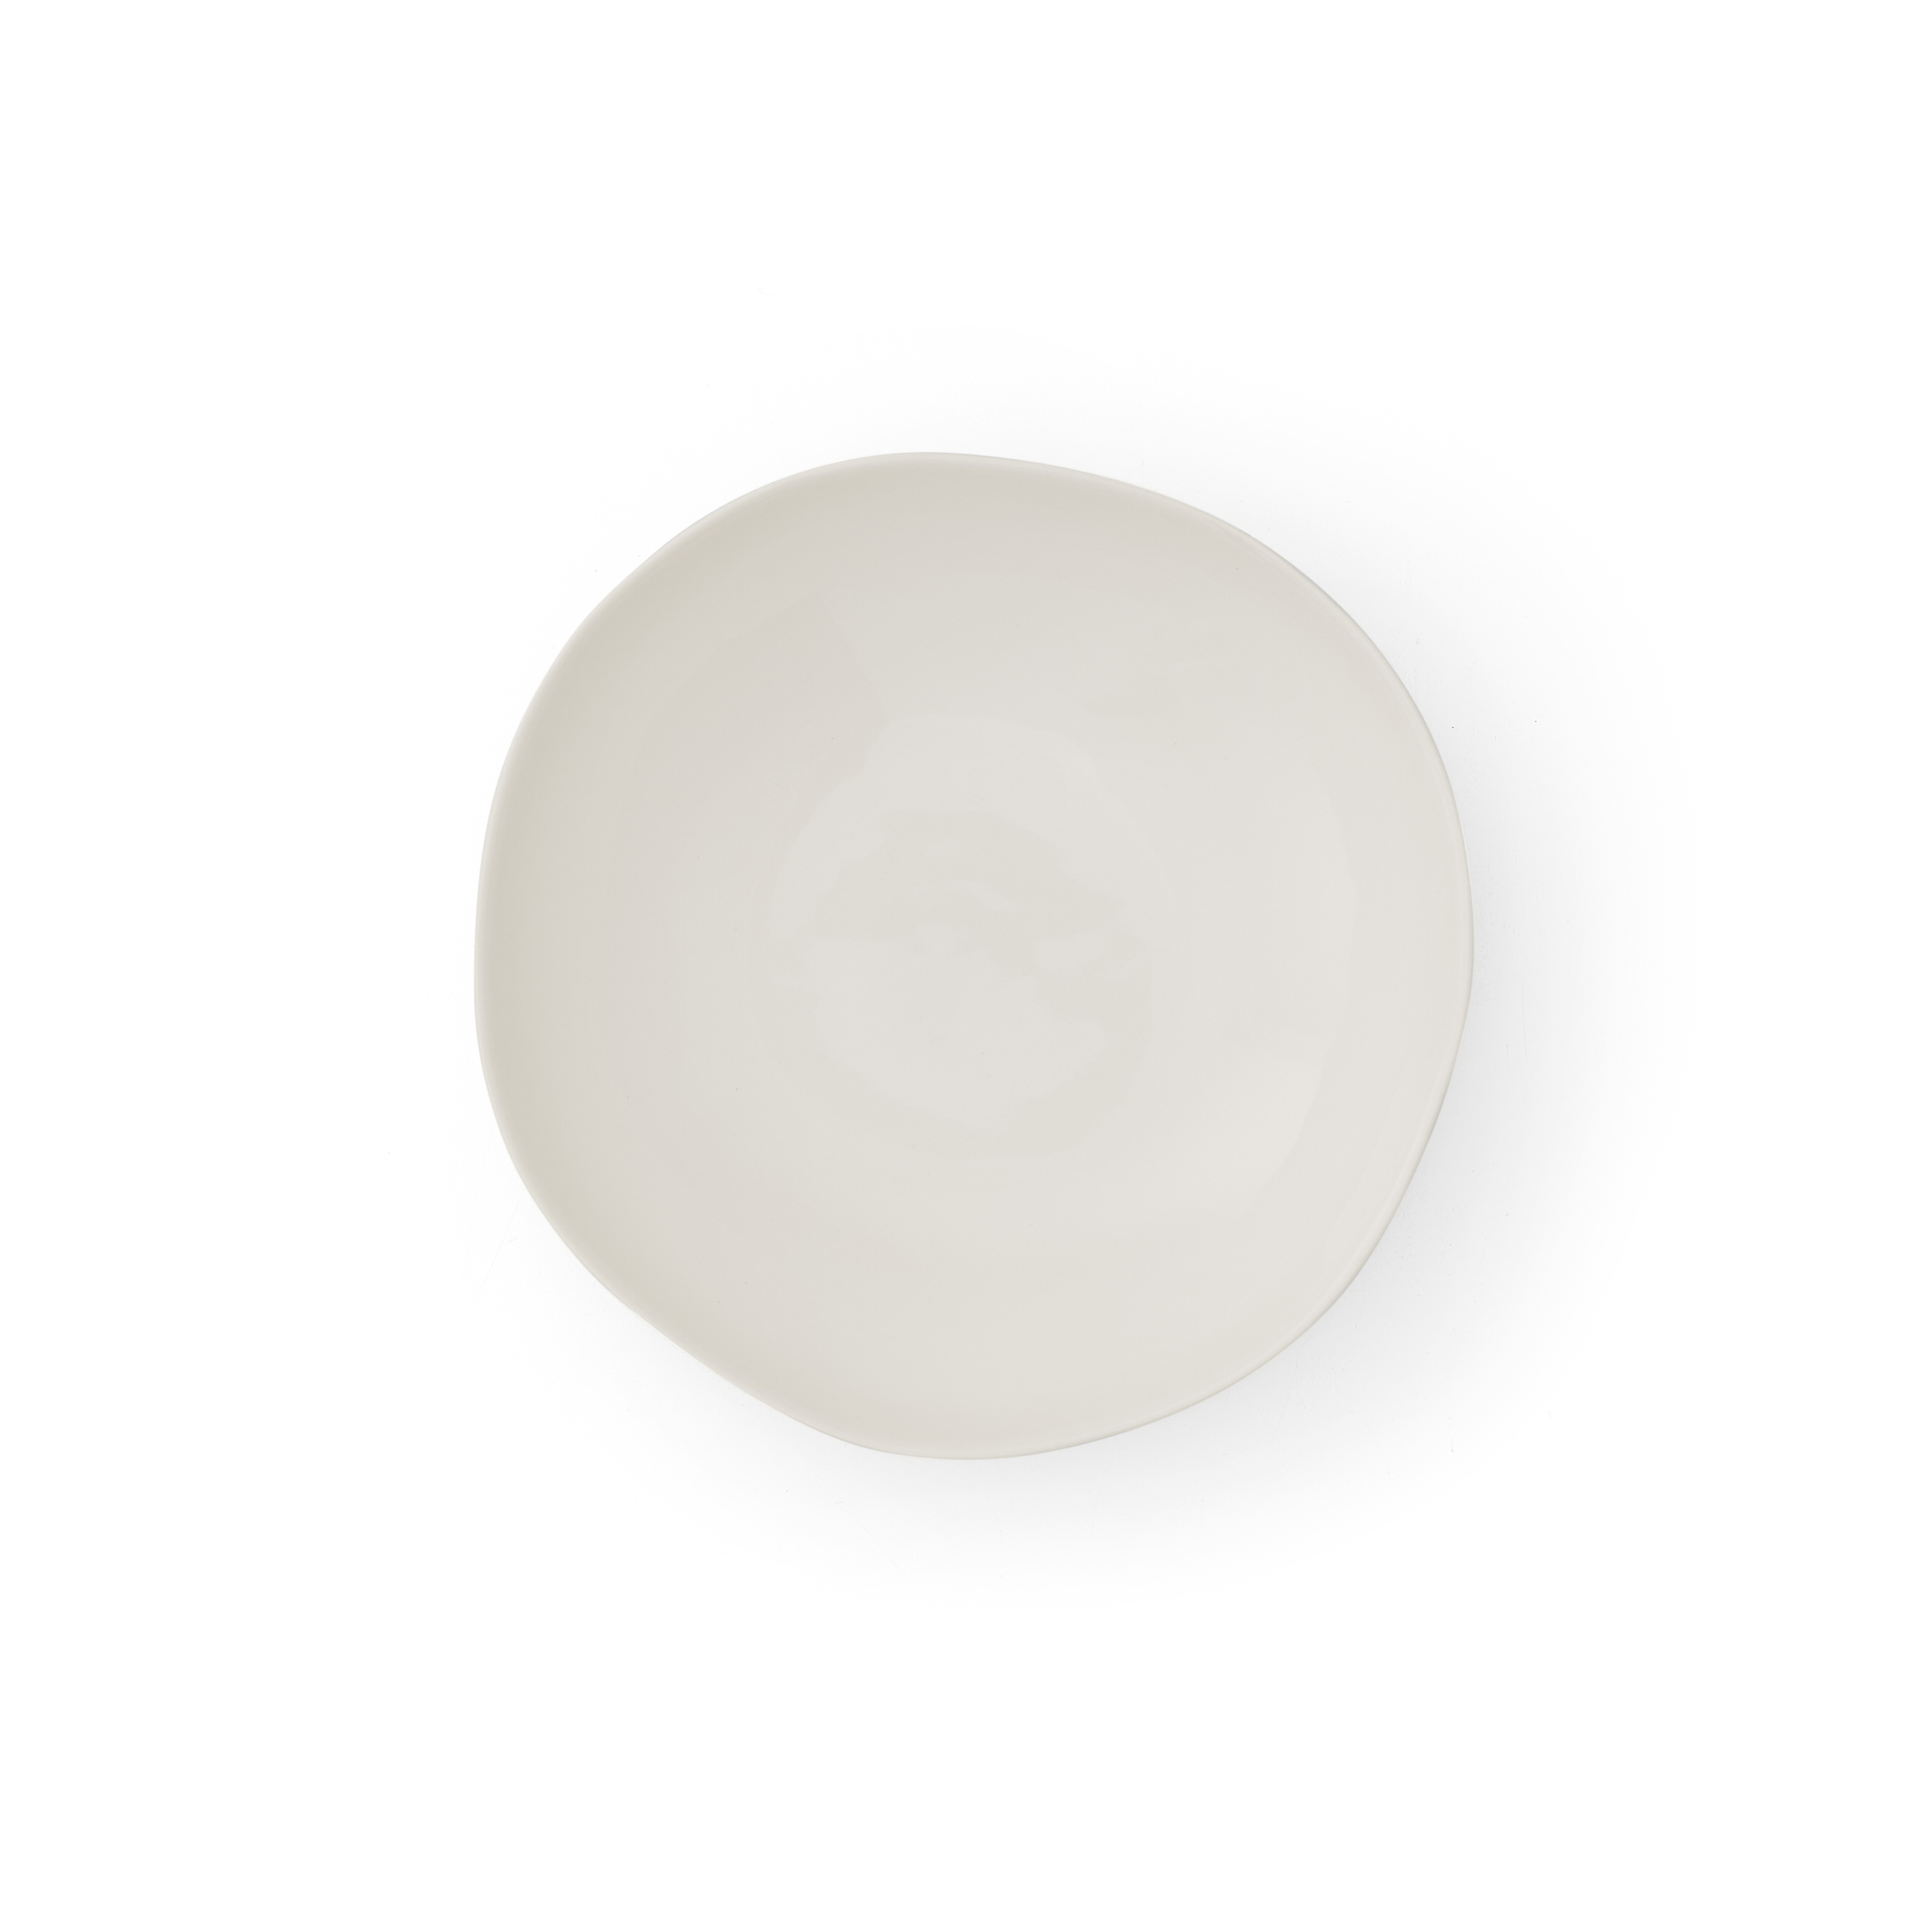 Sophie Conran Arbor Pasta Bowls, Cream image number null